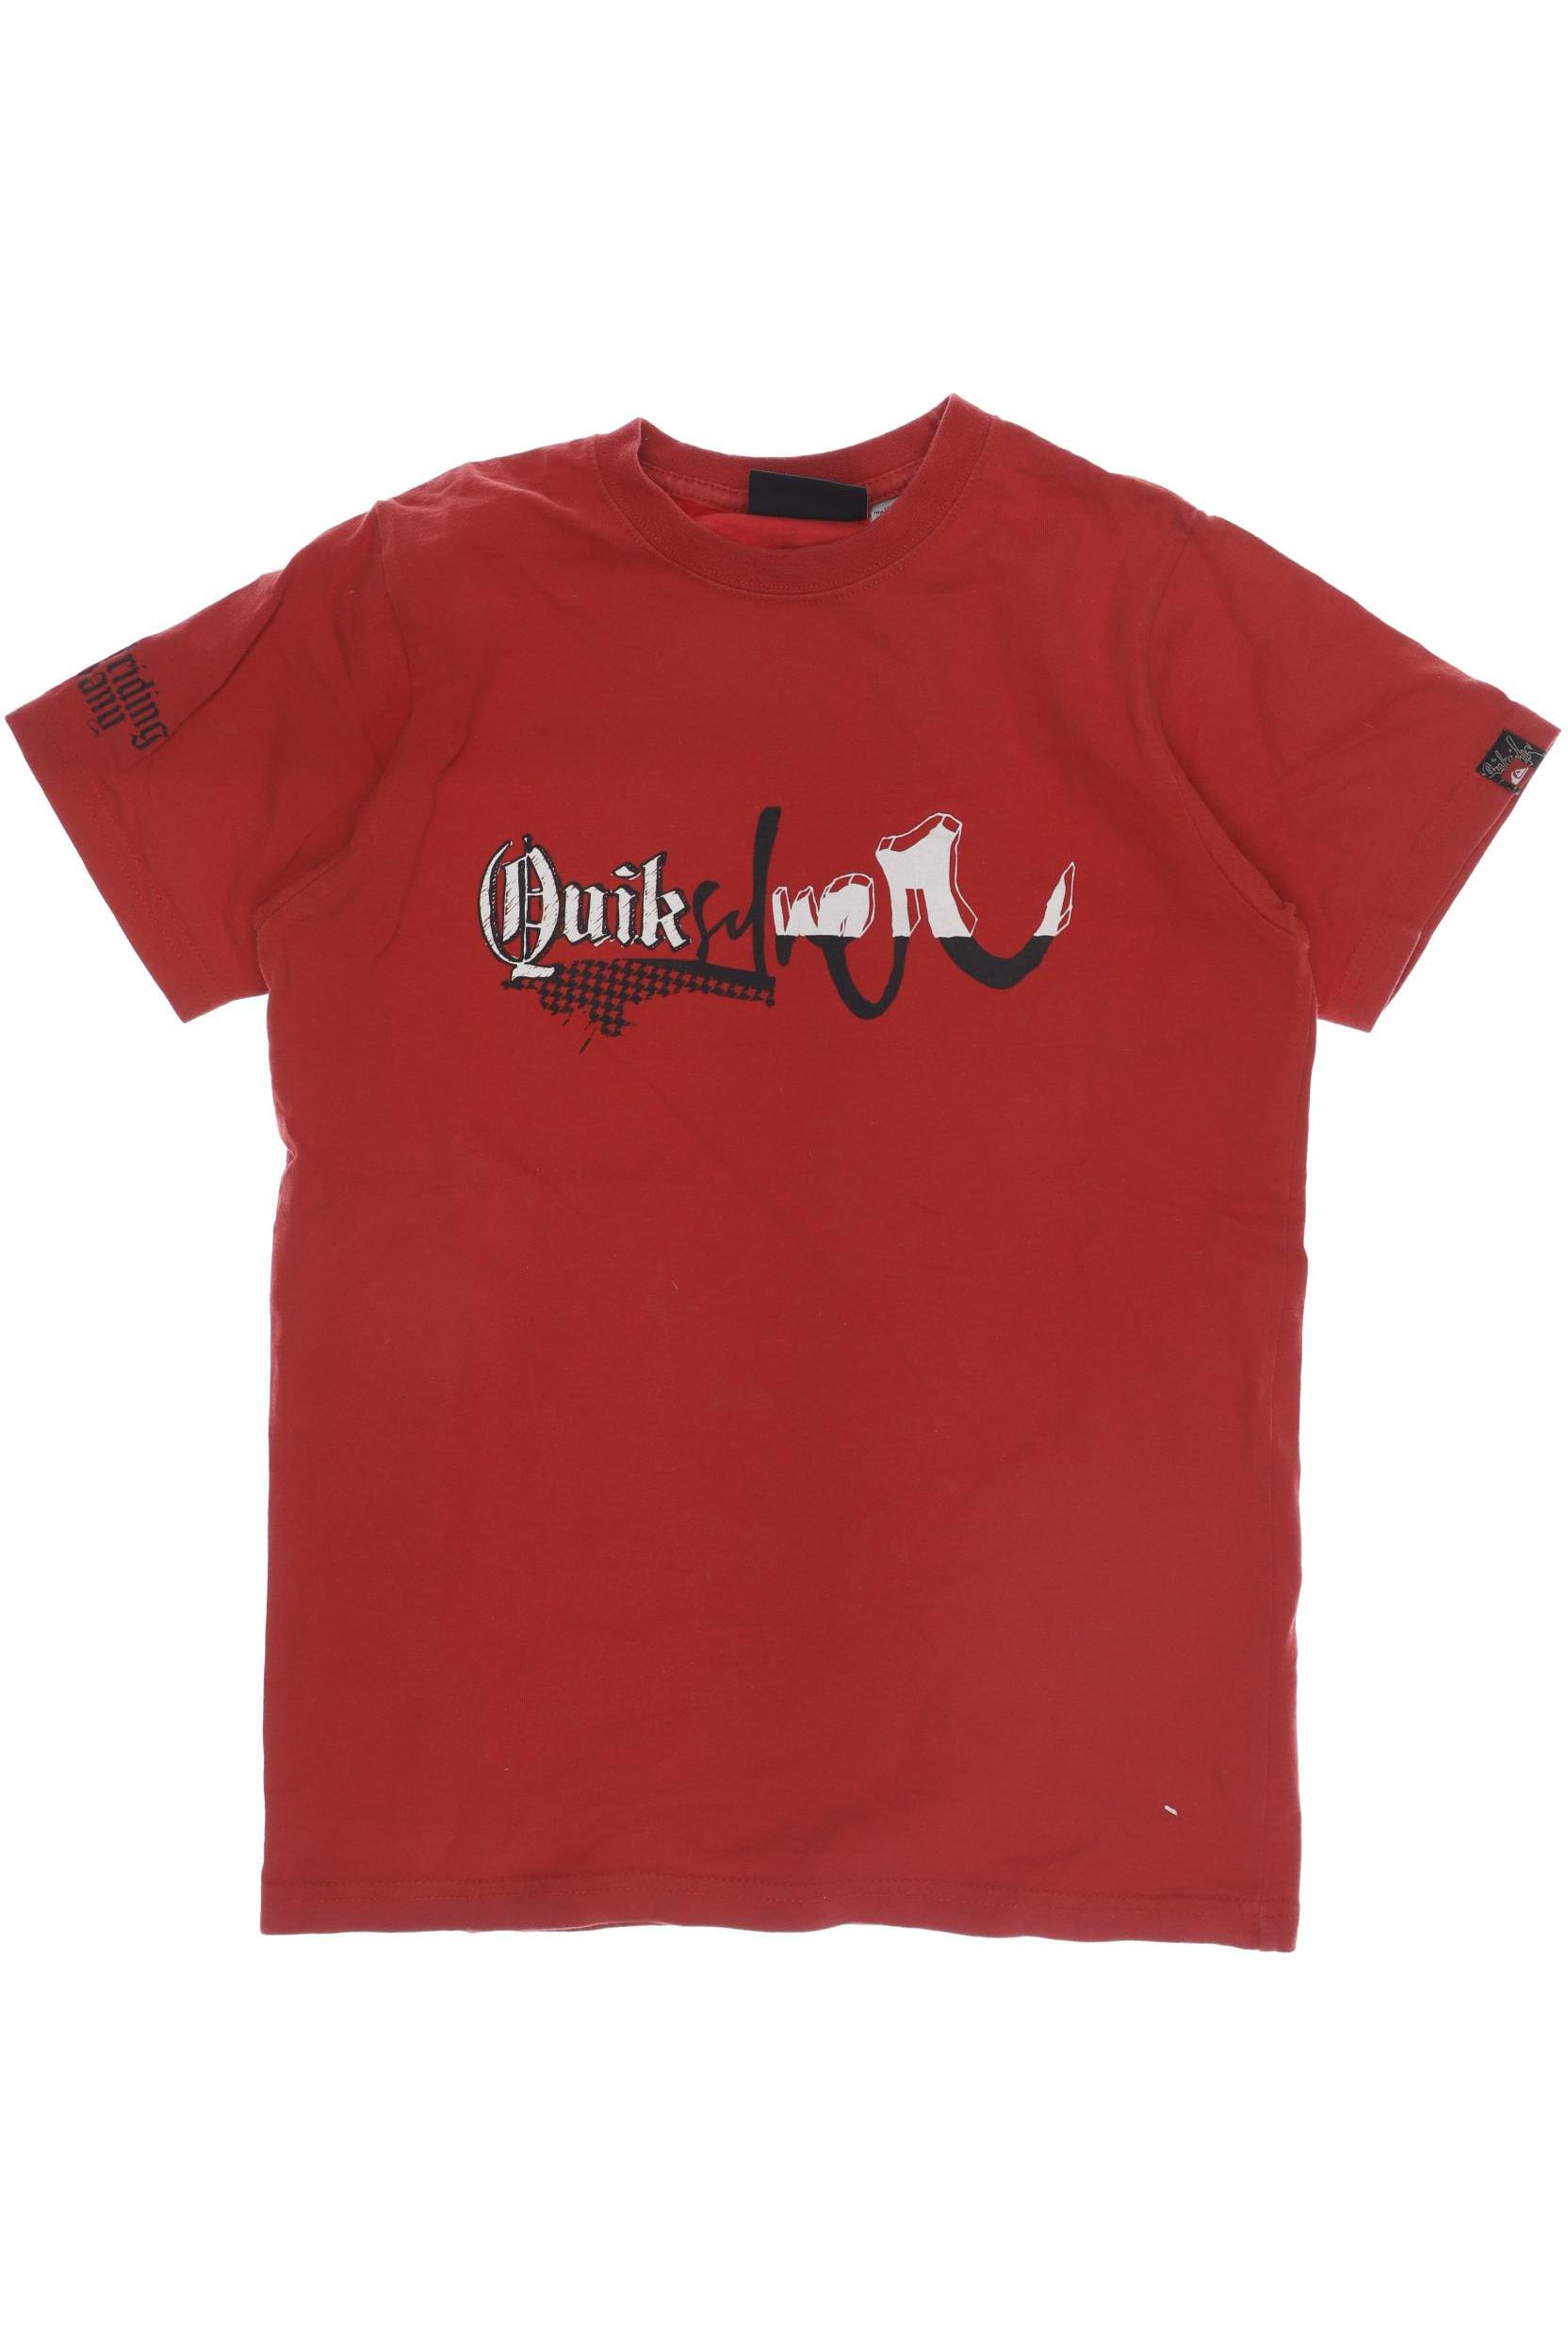 QUIKSILVER Jungen T-Shirt, rot von Quiksilver